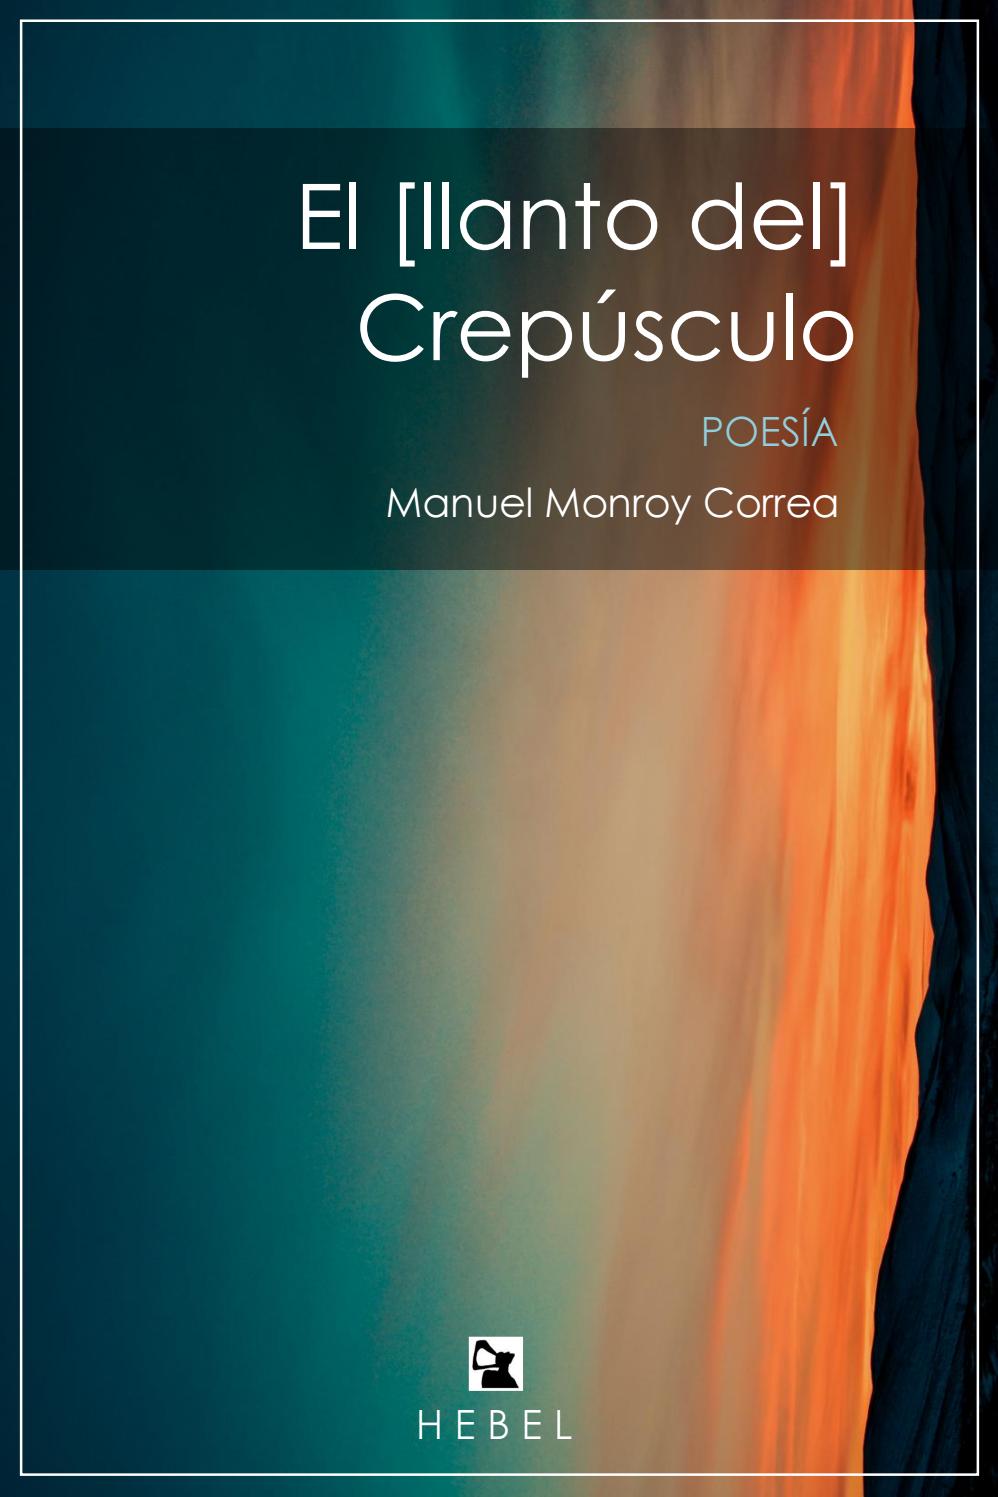 Manuel Monroy Correa: El [llanto del] Crepúsculo (Spanish language, Hebel Ediciones)